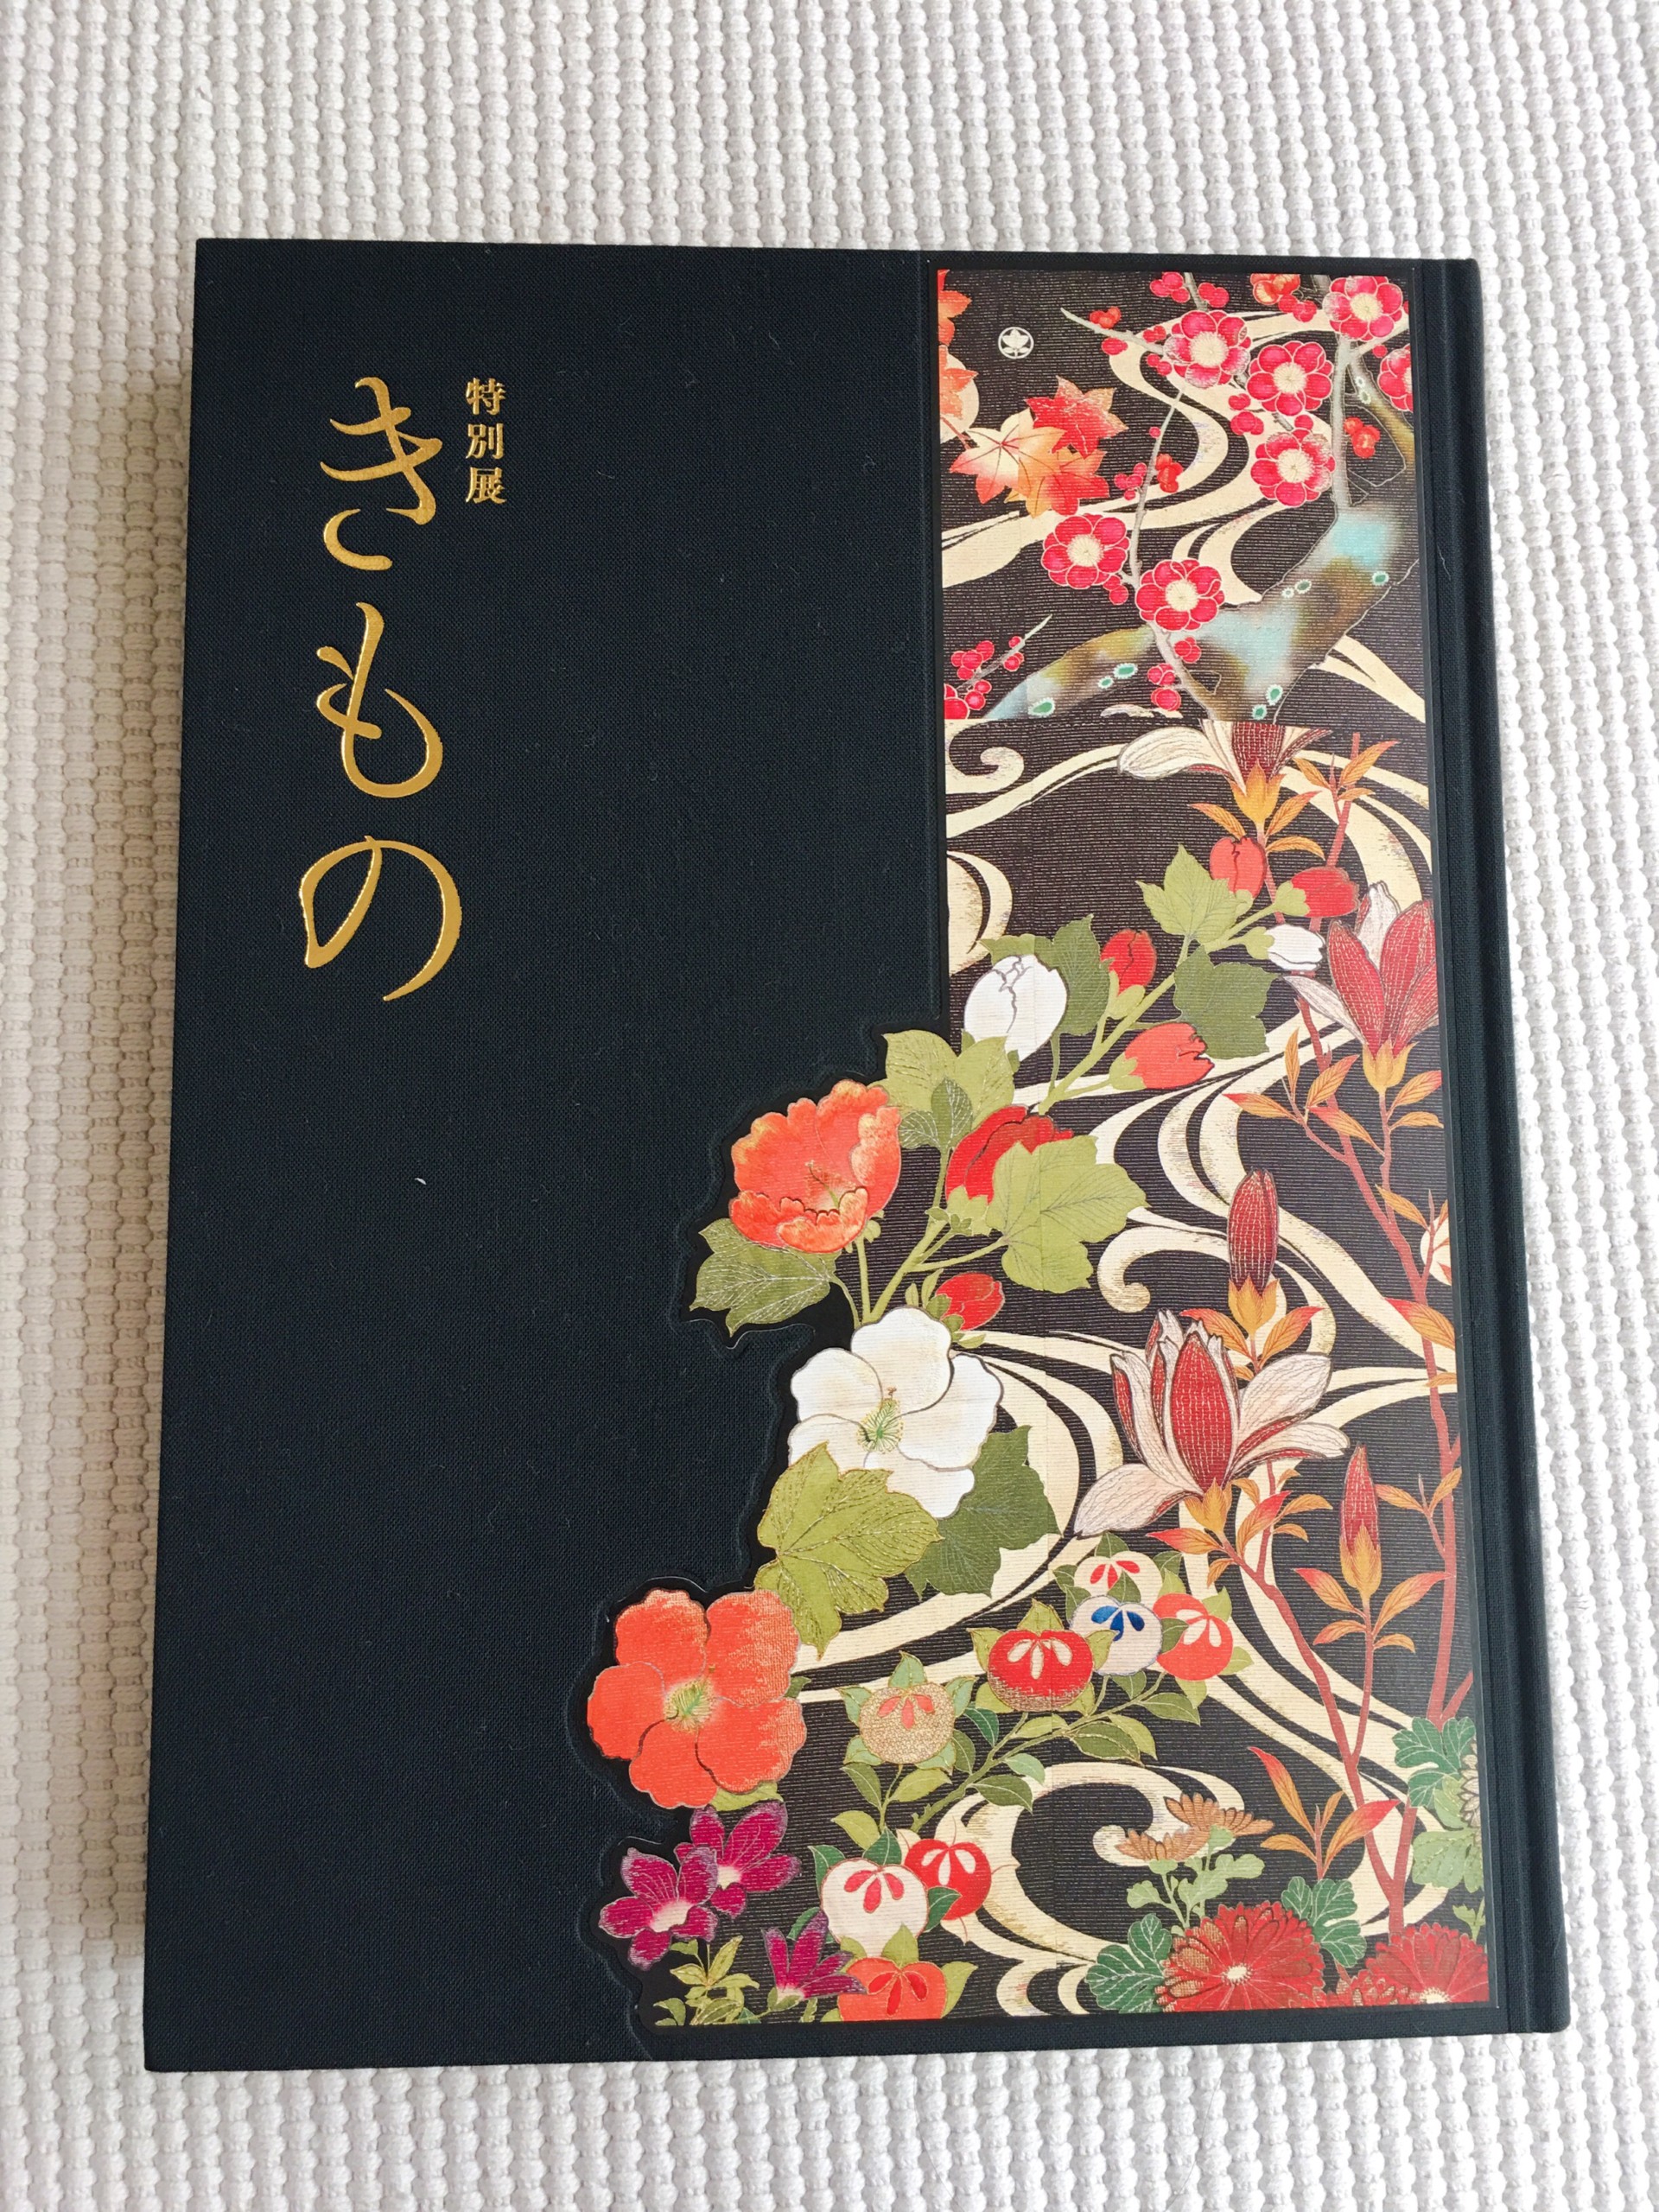 東京国立博物館特別展「きものKIMONO」の図録が家に届いたらすごかった 